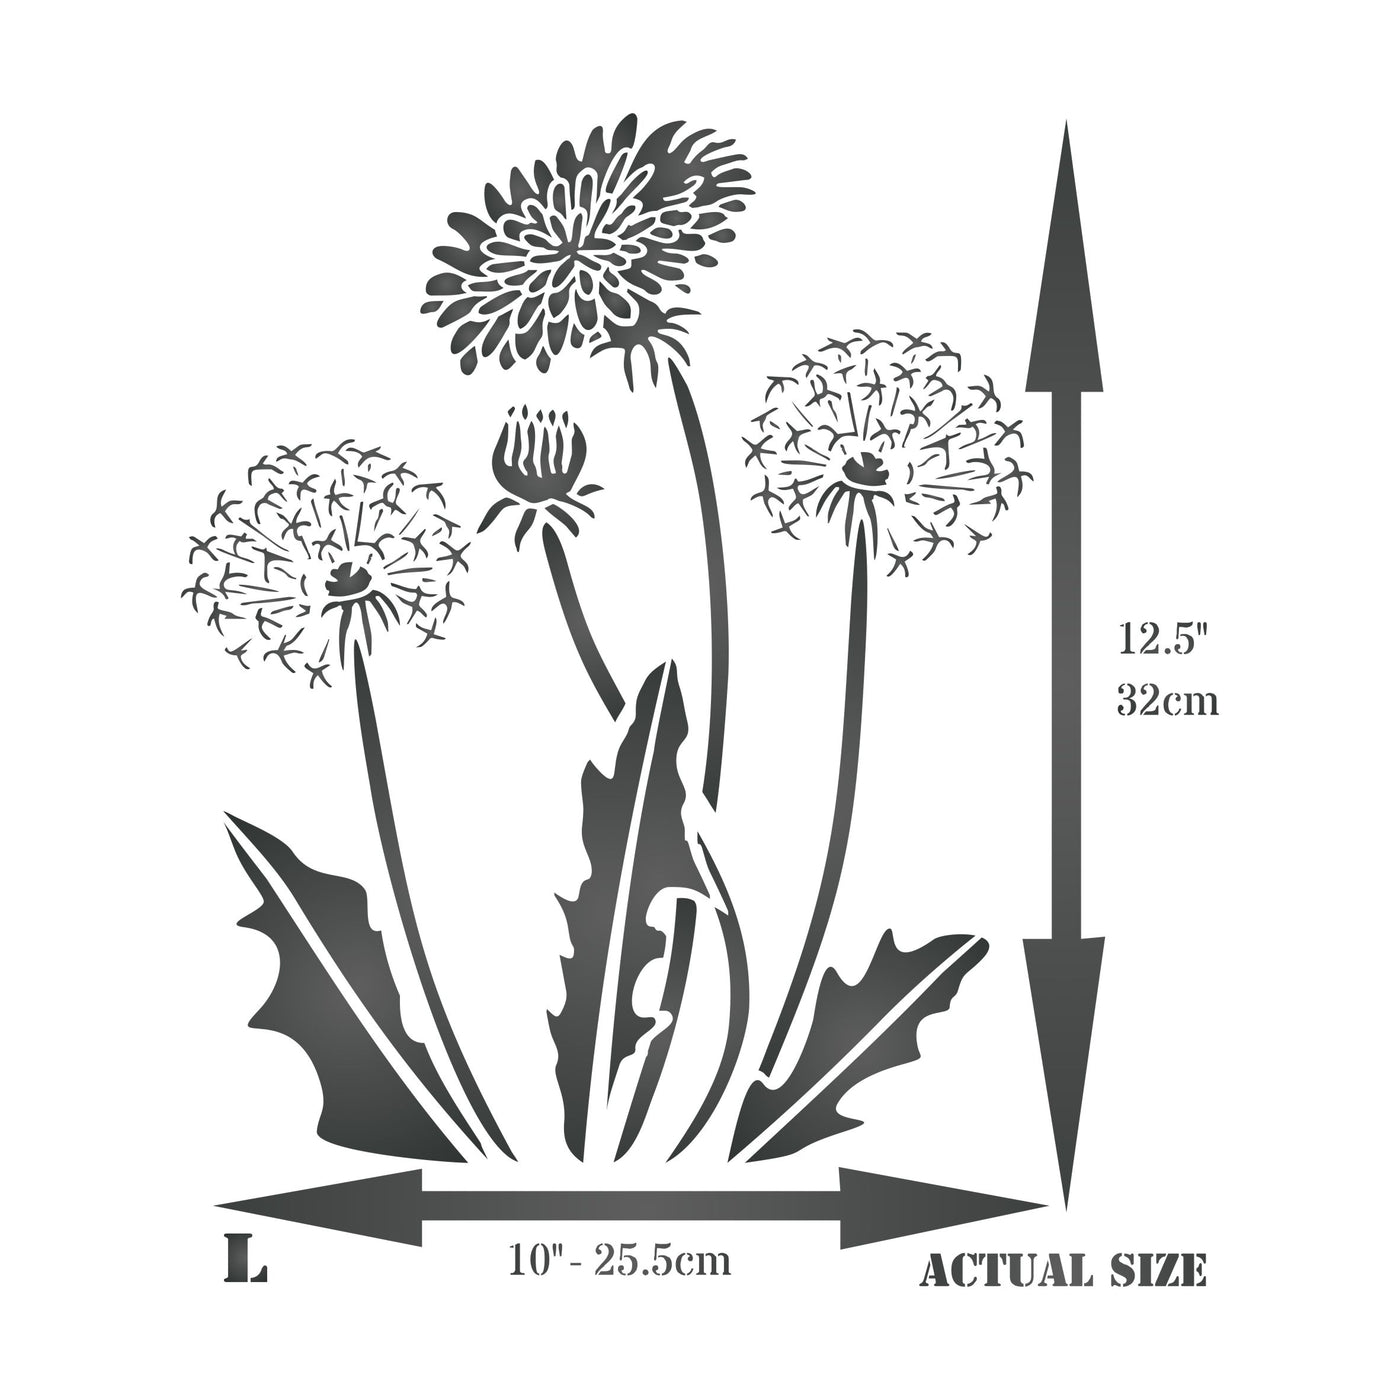 Dandelion Stencil - Dandilion Puff with Flower